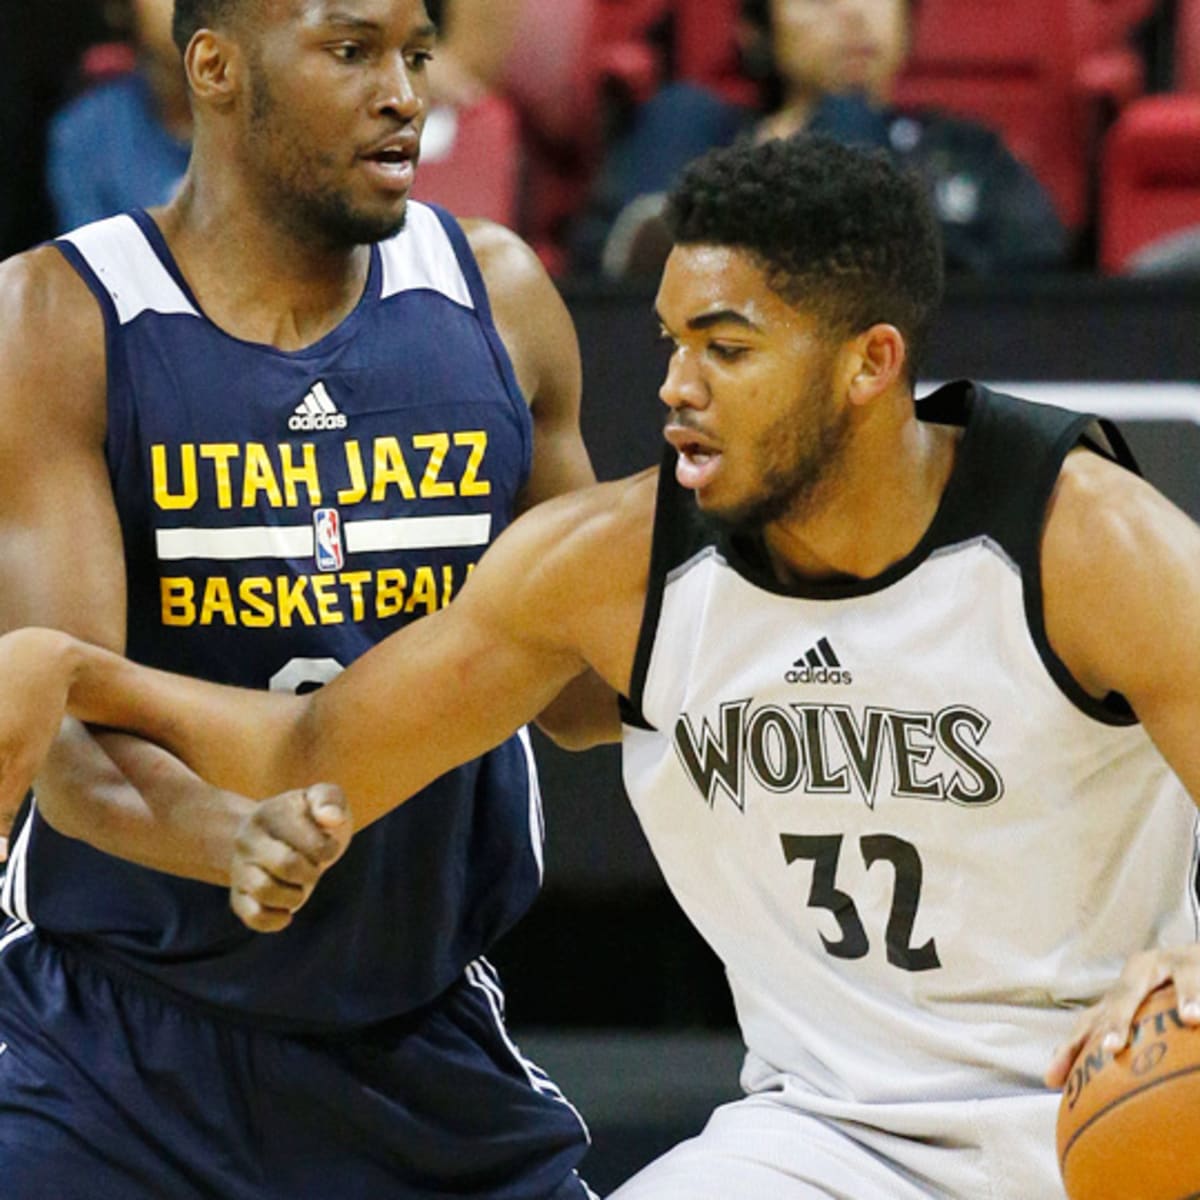 Utah Jazz take on the Minnesota Timberwolves in Las Vegas Summer